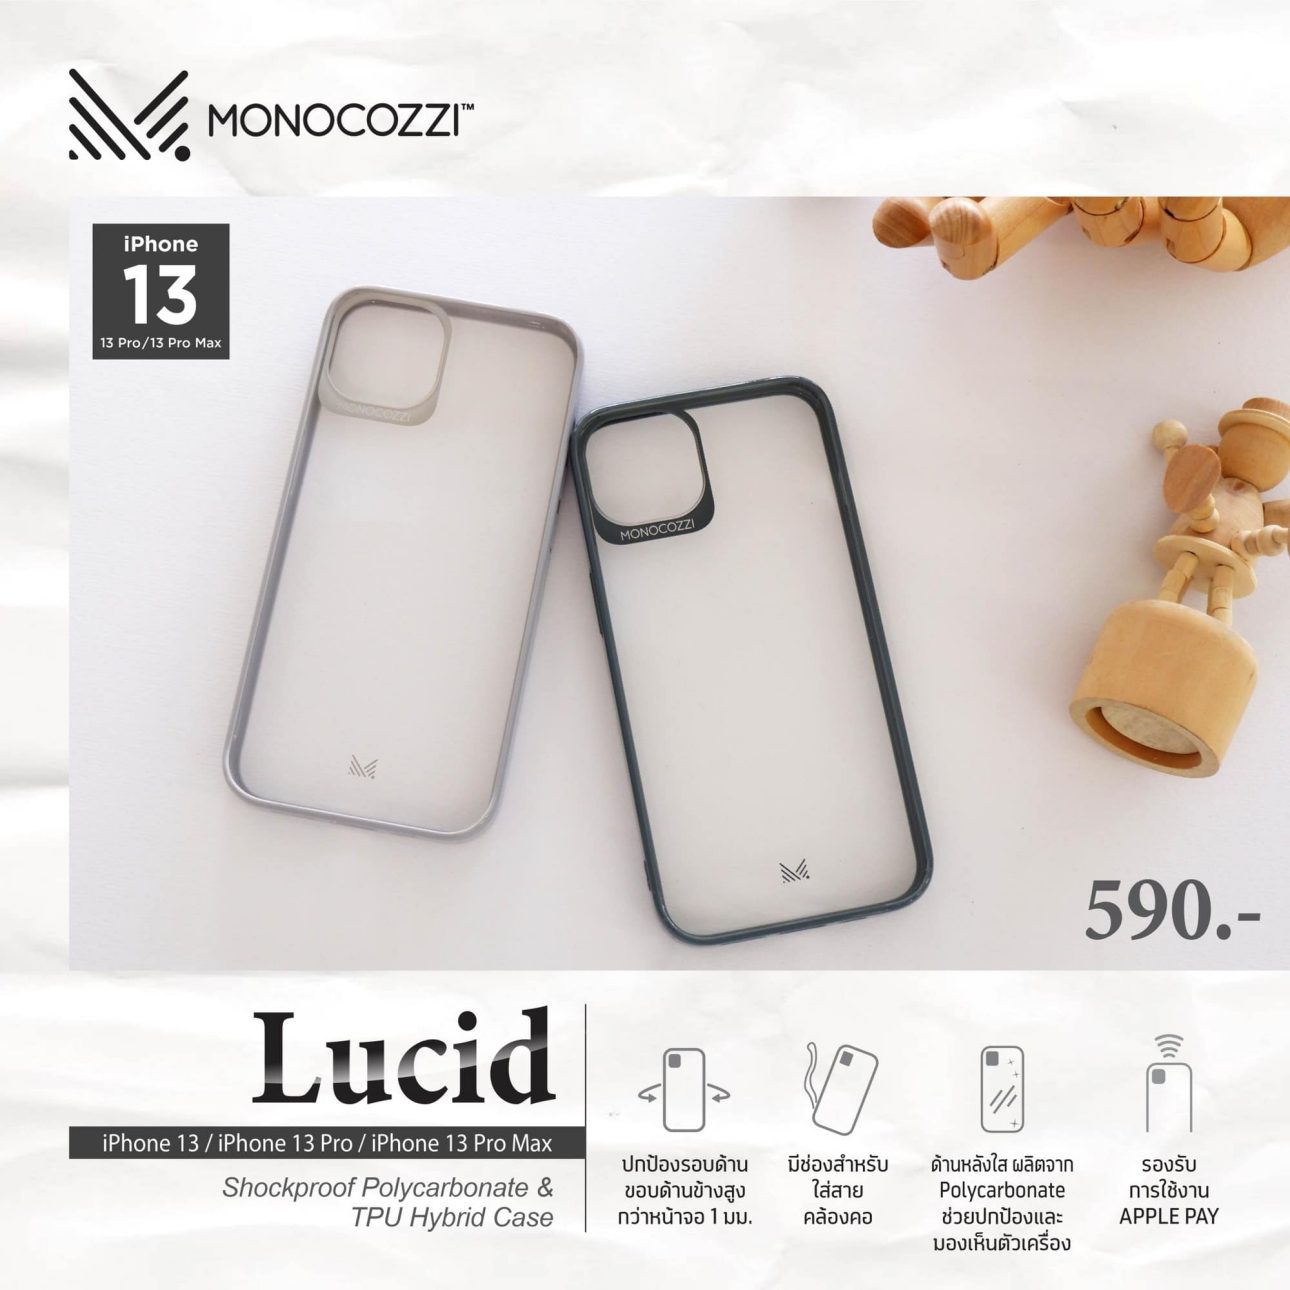 อาร์ทีบีฯ เอาใจสาวก iPhone13 พร้อมส่งเคสกันกระแทก ภายใต้แบรนด์ Monocozzi™ ลงตลาดพร้อมกัน 4 รุ่น 3